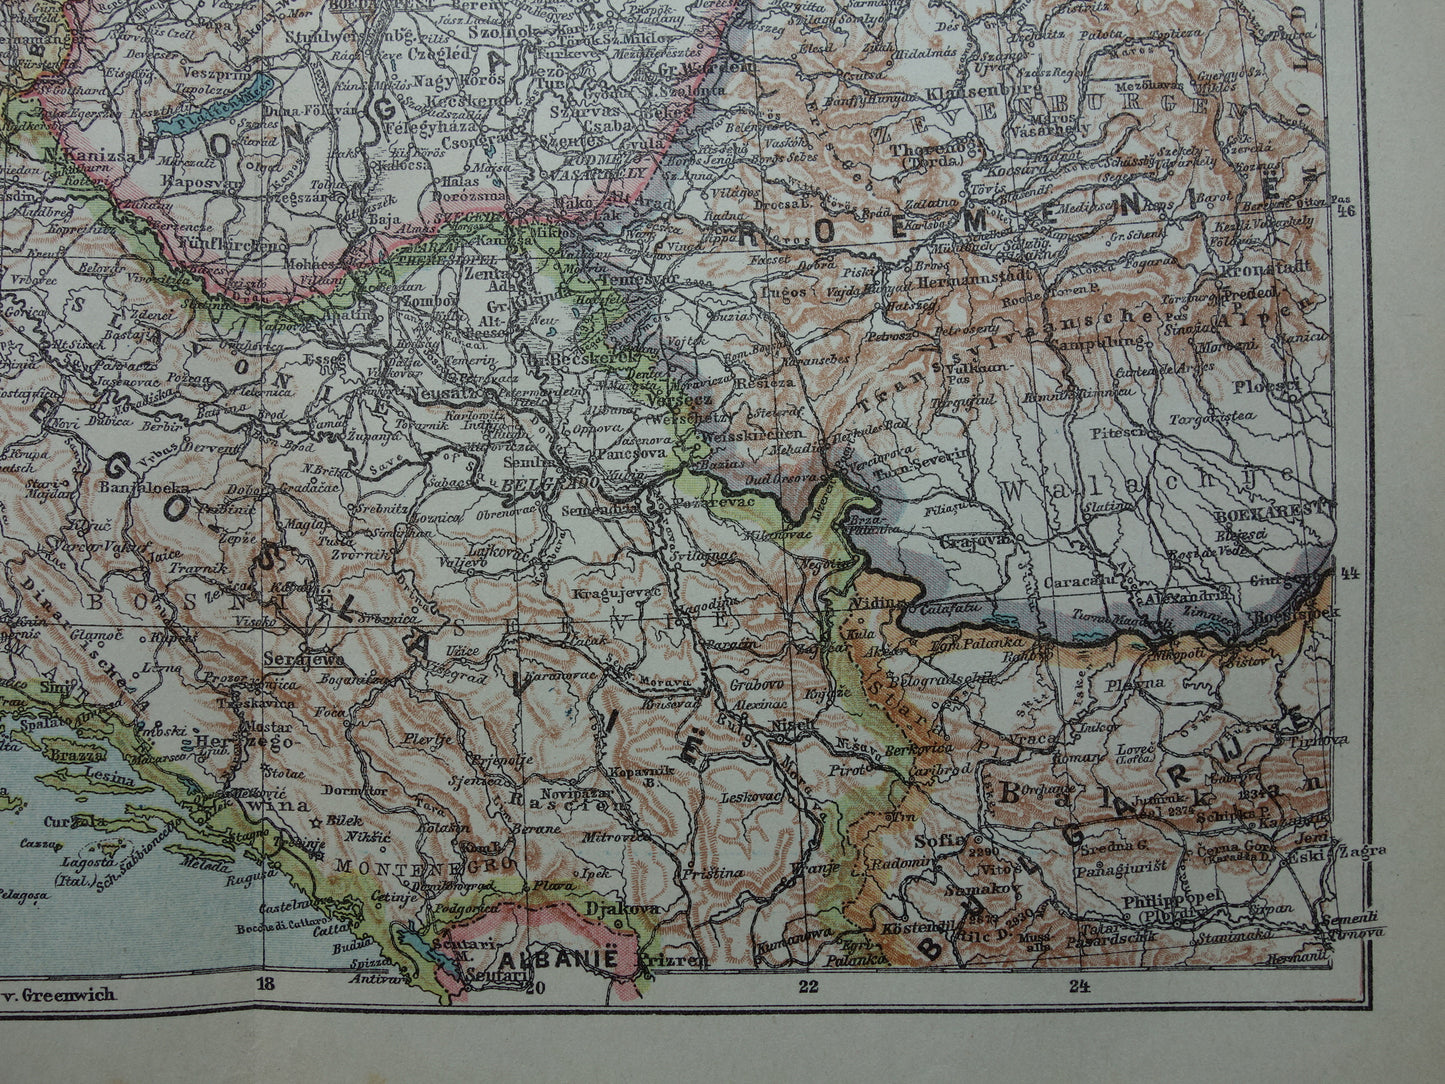 Oude kaart van de Balkan met Tsjechoslowakije Joegoslavië Hongarije Originele antieke Nederlandse landkaart van voormalig Oostenrijk-Hongarije uit 1921 vintage historische kaarten